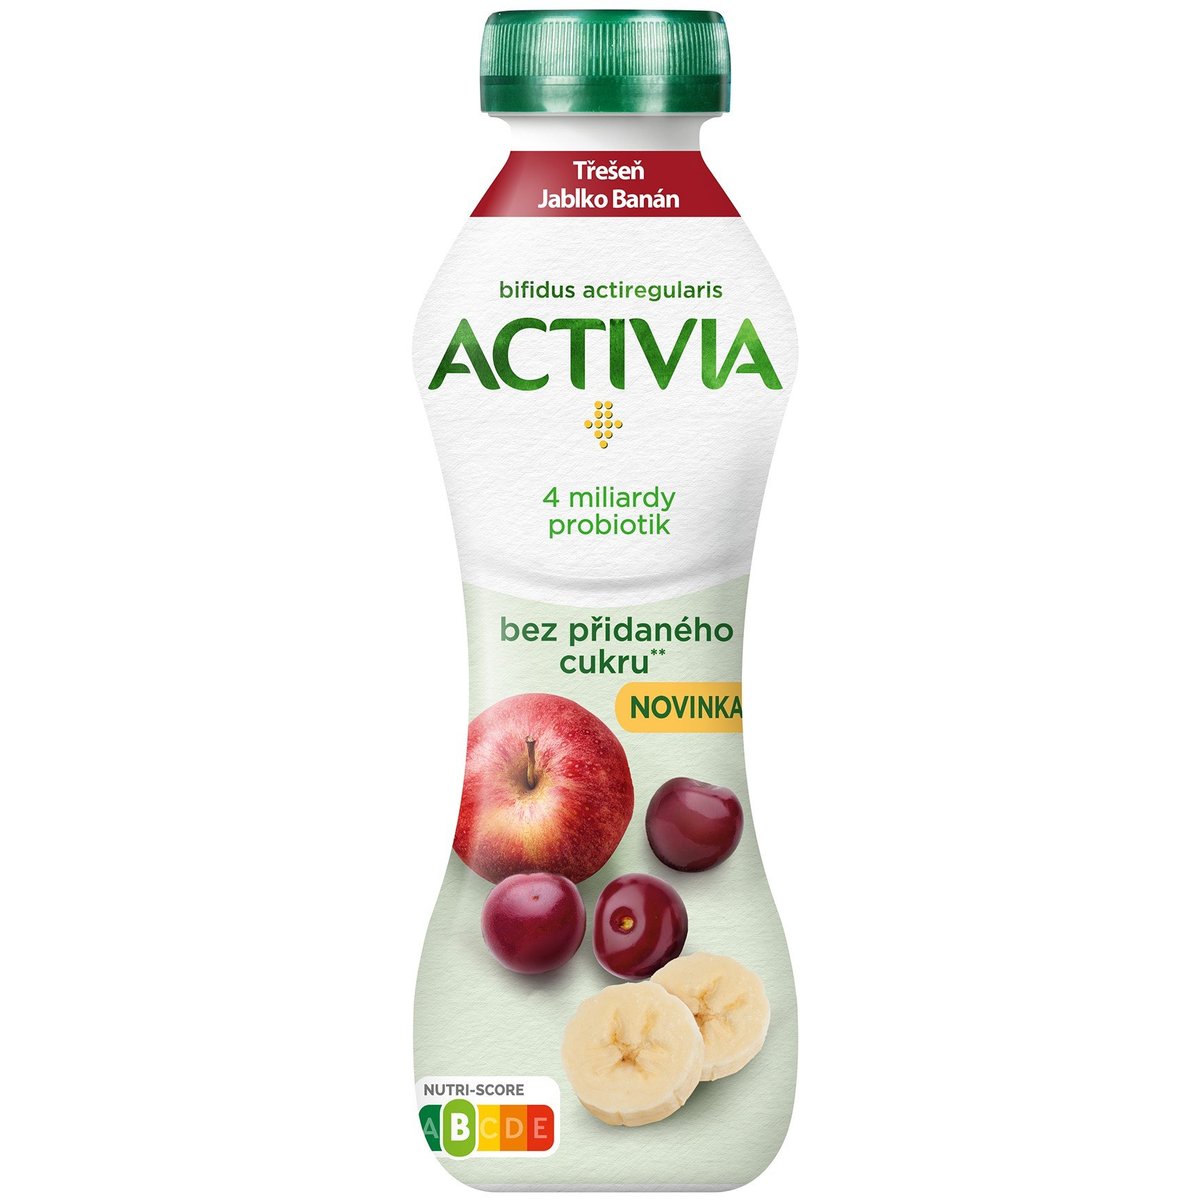 Activia Probiotický jogurtový nápoj jablko, třešeň a banán bez přidaného cukru